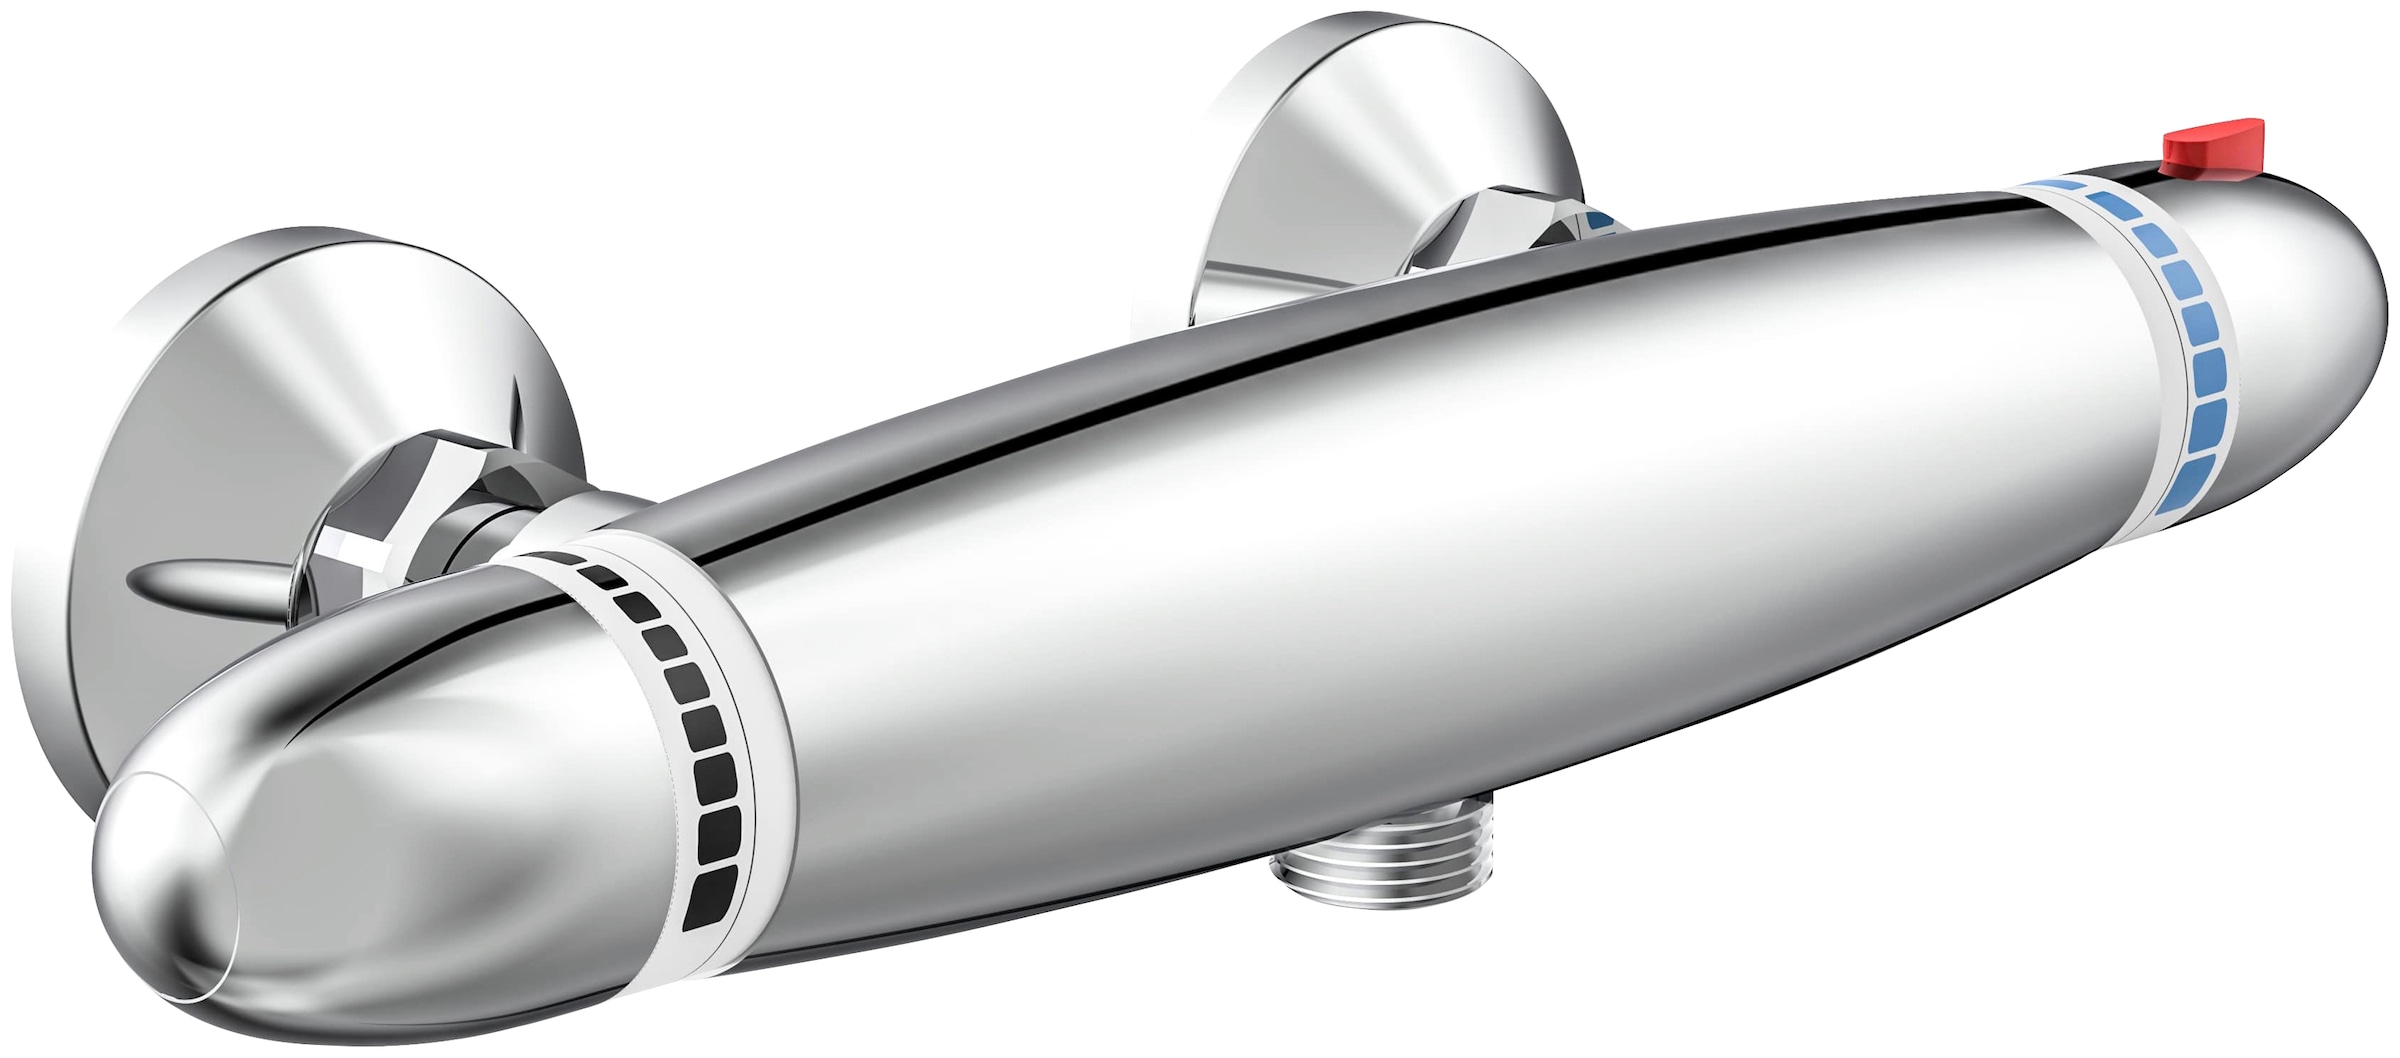 Schütte Brausethermostat »Supra«, mit Thermostat, Mischbatterie Dusche, Duschthermostat in Chrom